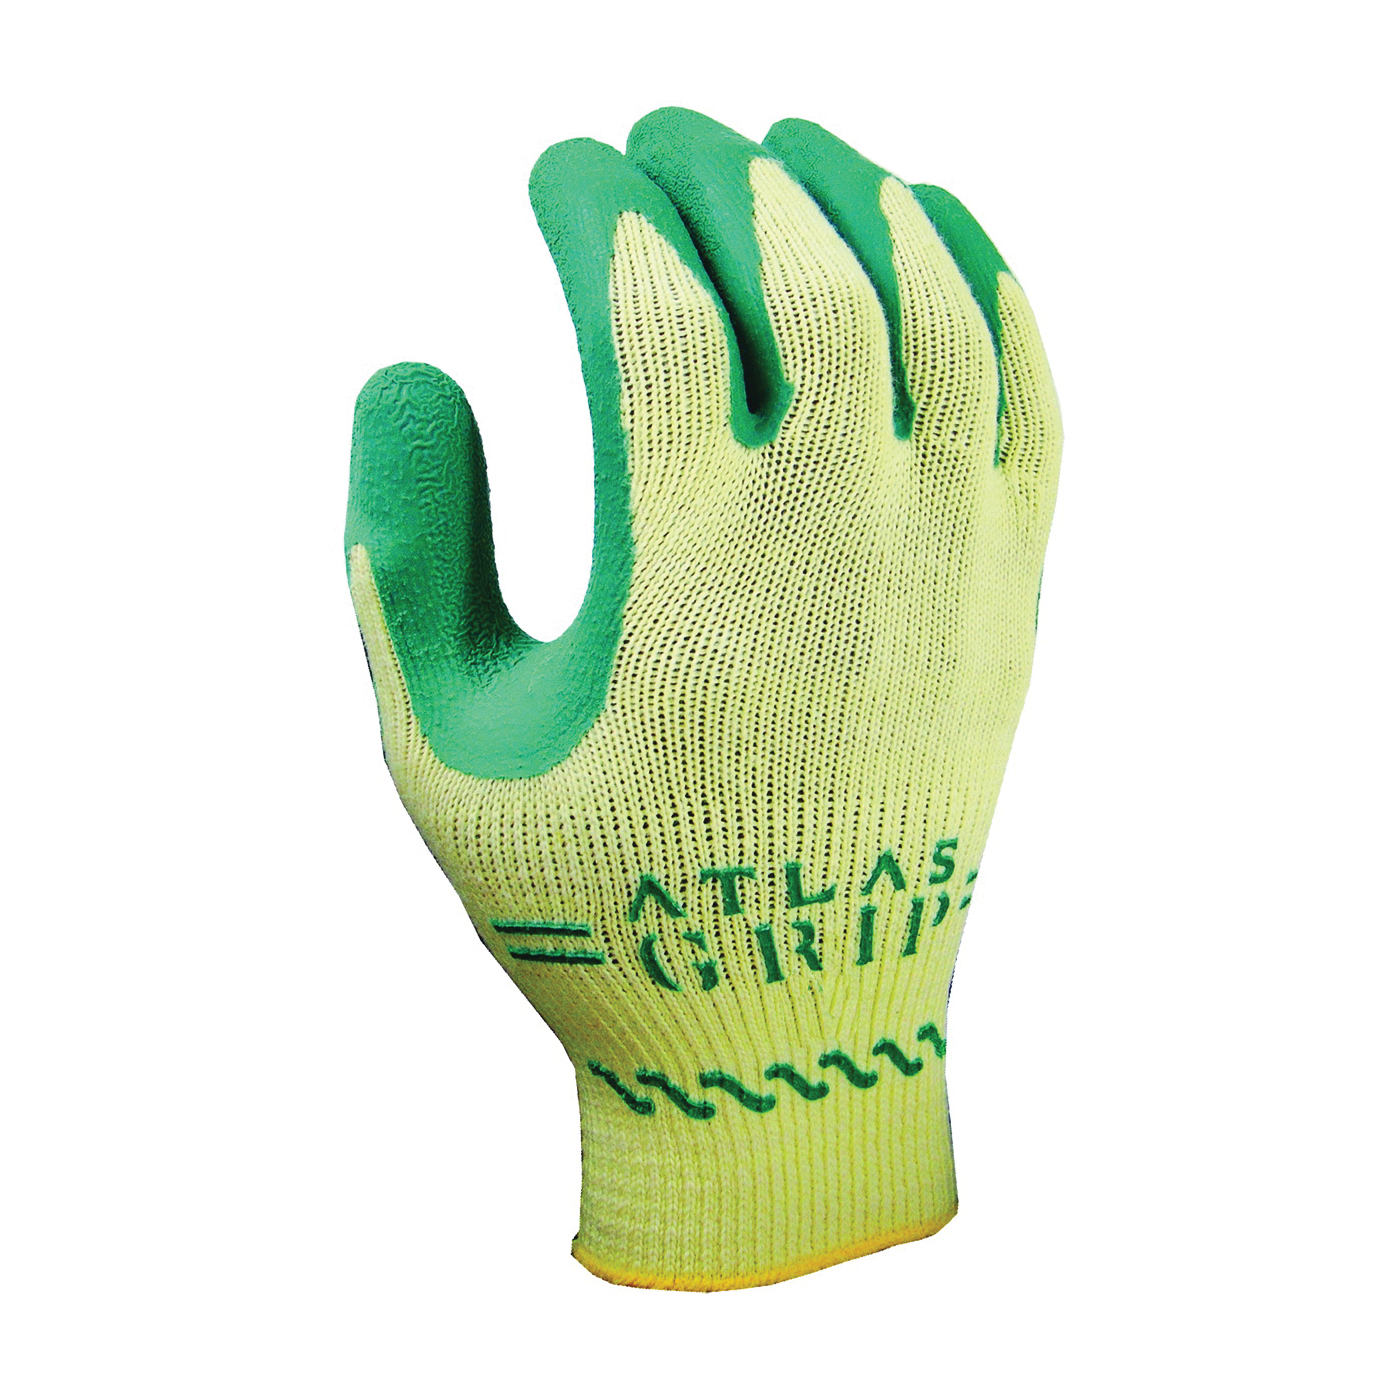 310GXS-06.RT Ergonomic Protective Gloves, XS, Knit Wrist Cuff, Green/Yellow